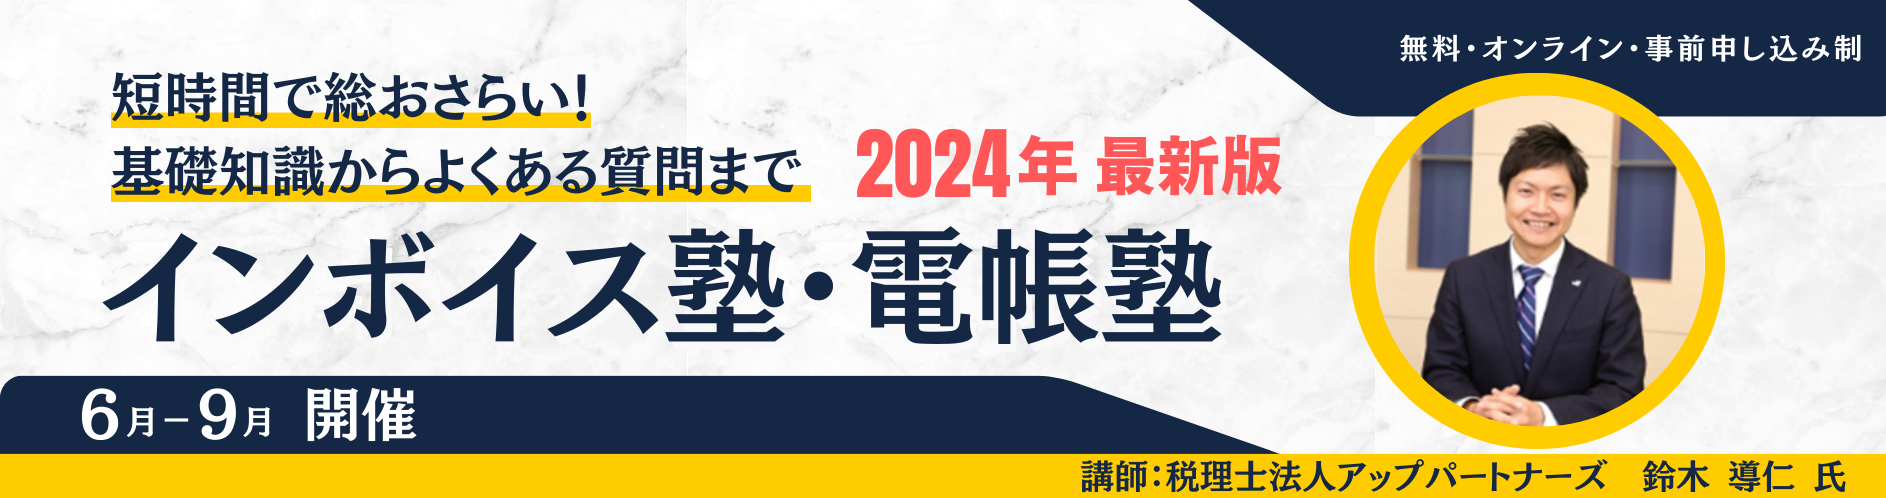 インボイス塾・電帳塾2024